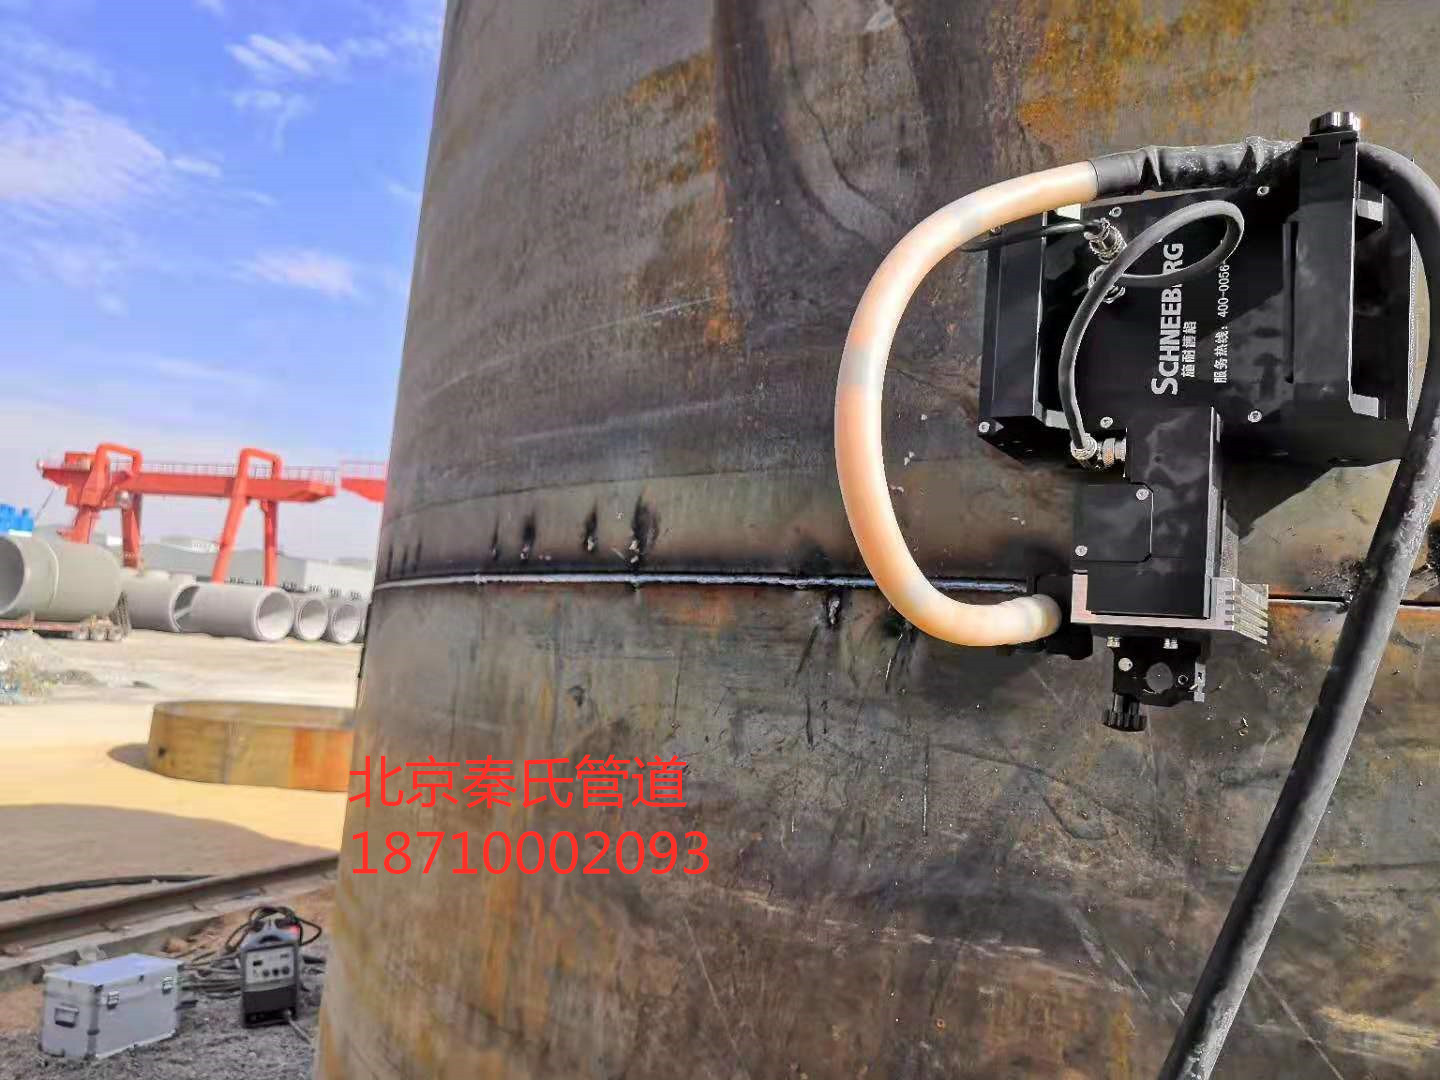 合金钢管道自动焊机 管道自动焊机 管道自动焊机图片图片